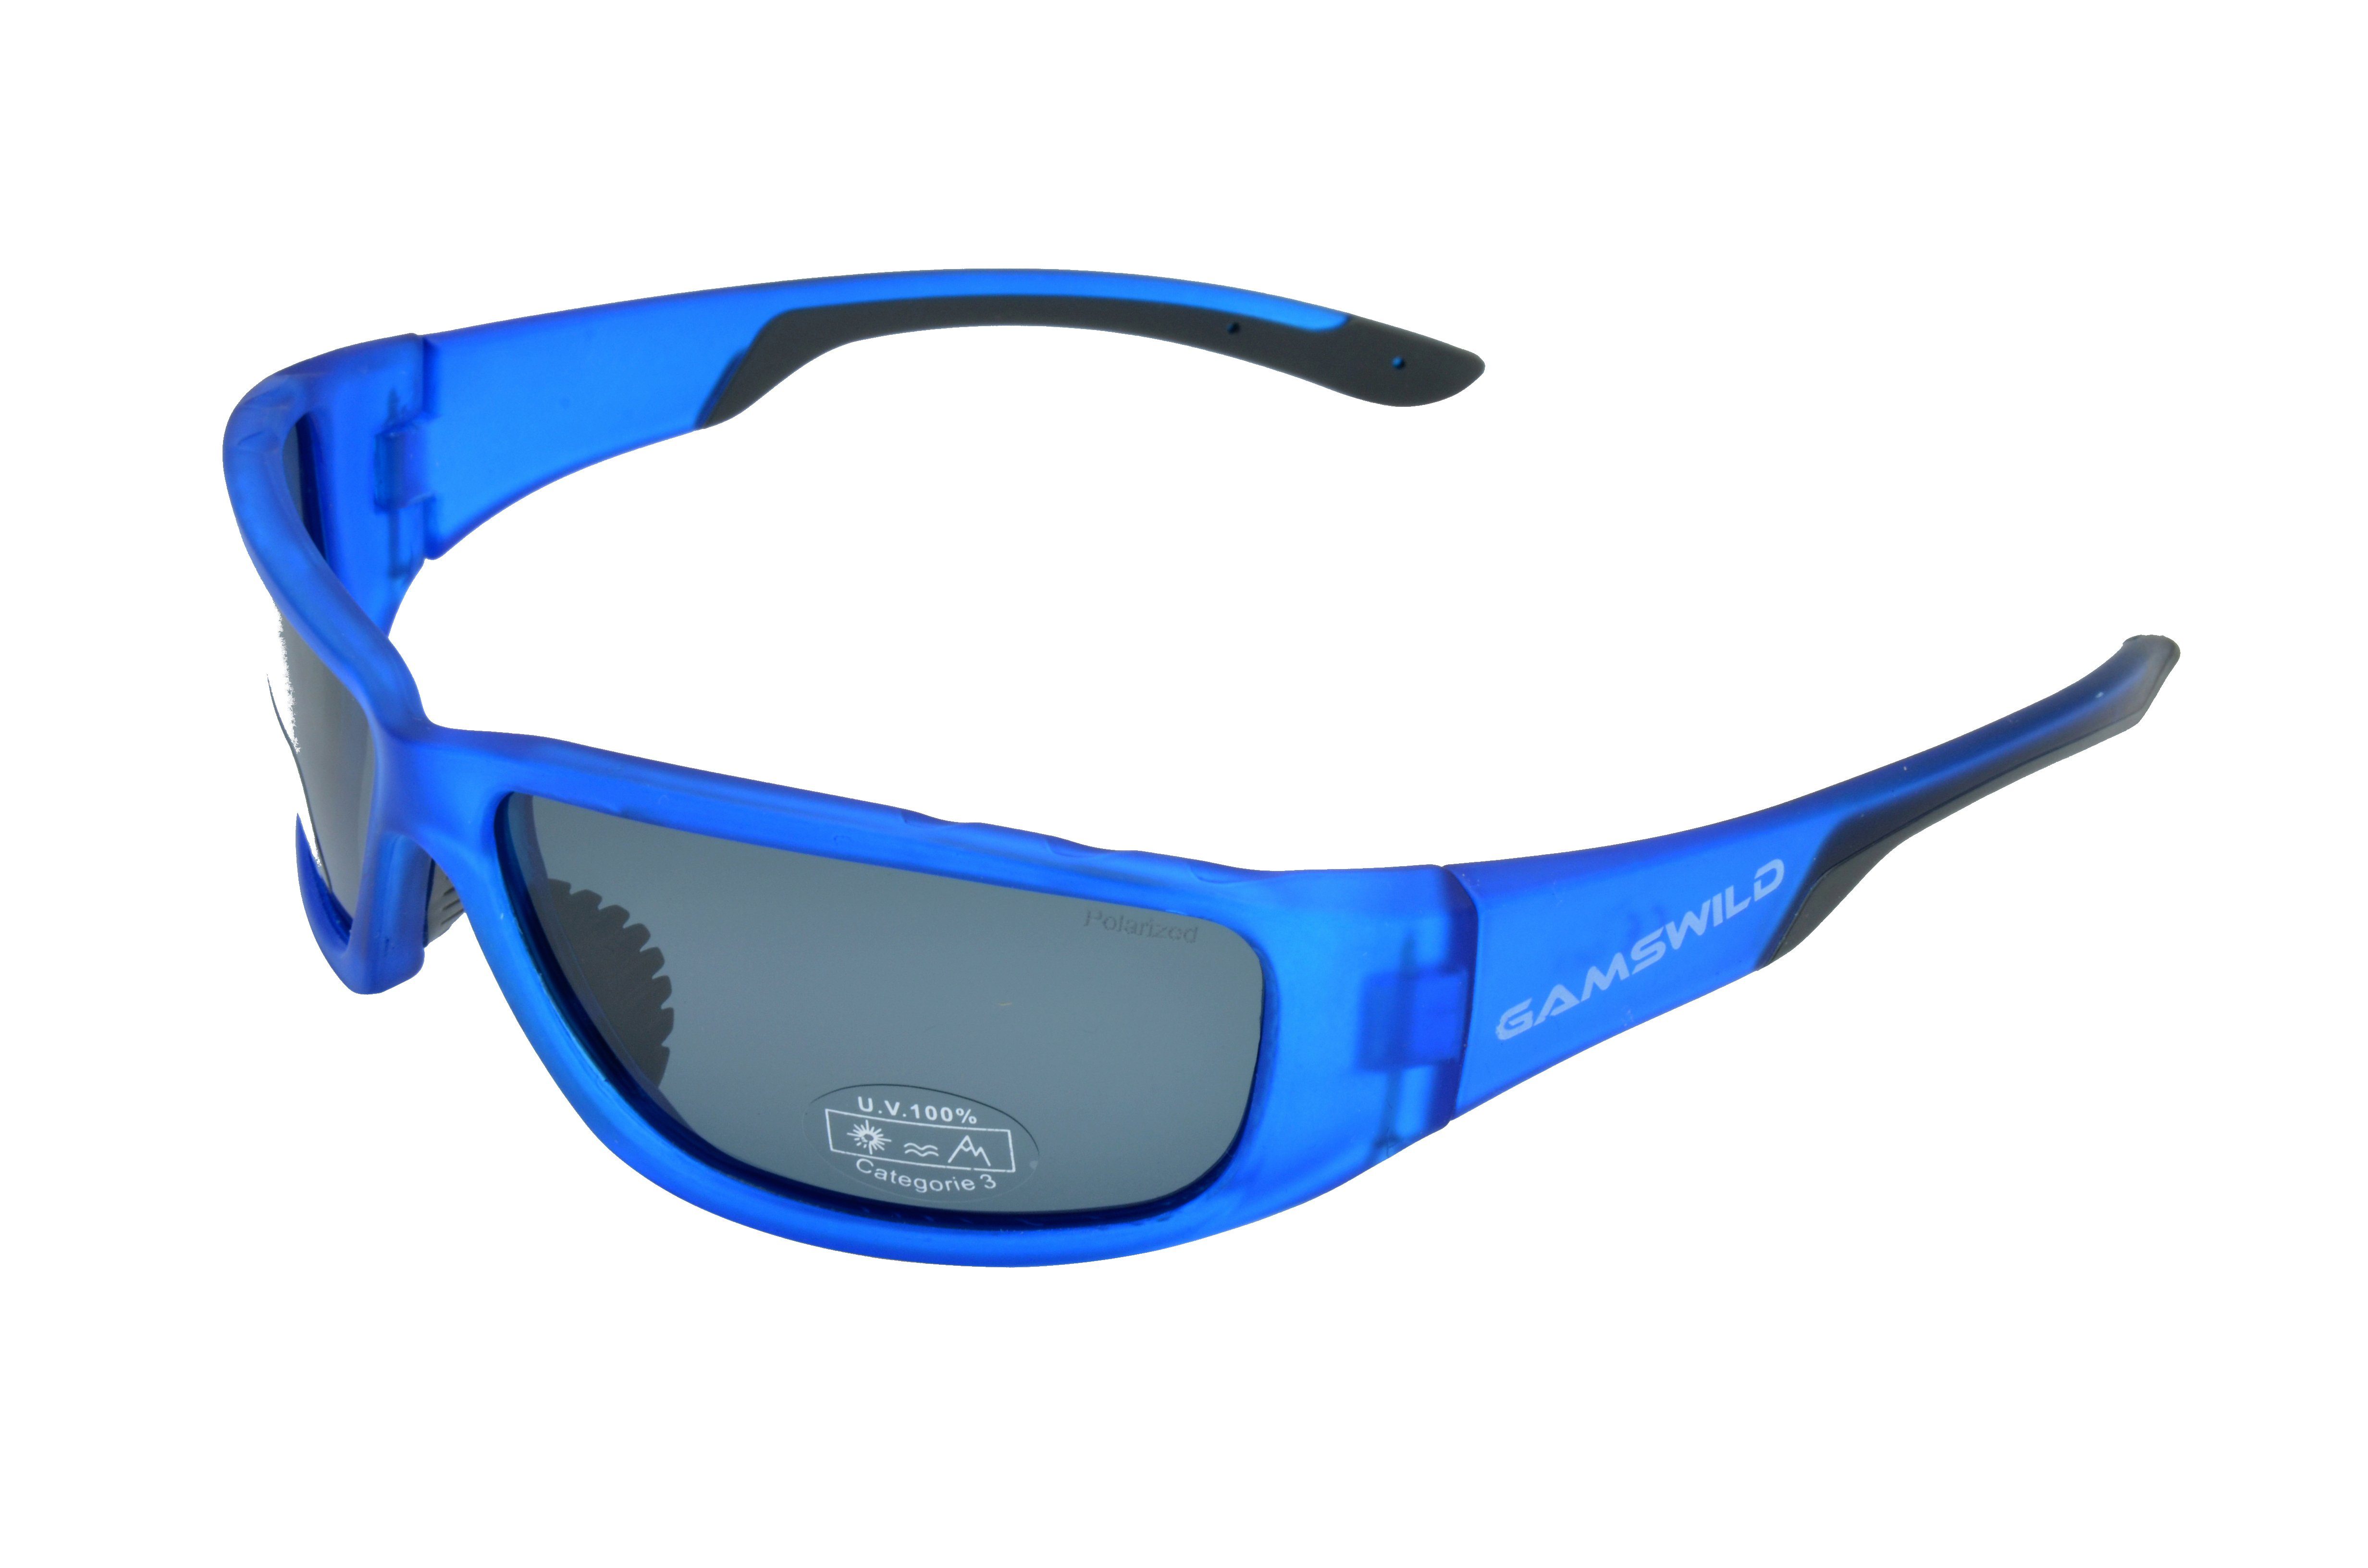 Gamswild Sonnenbrille WS9331 Sportbrille Damen Herren Fahrradbrille Skibrille Unisex polarisiert rot, grün, blau halbtransparente Fassung